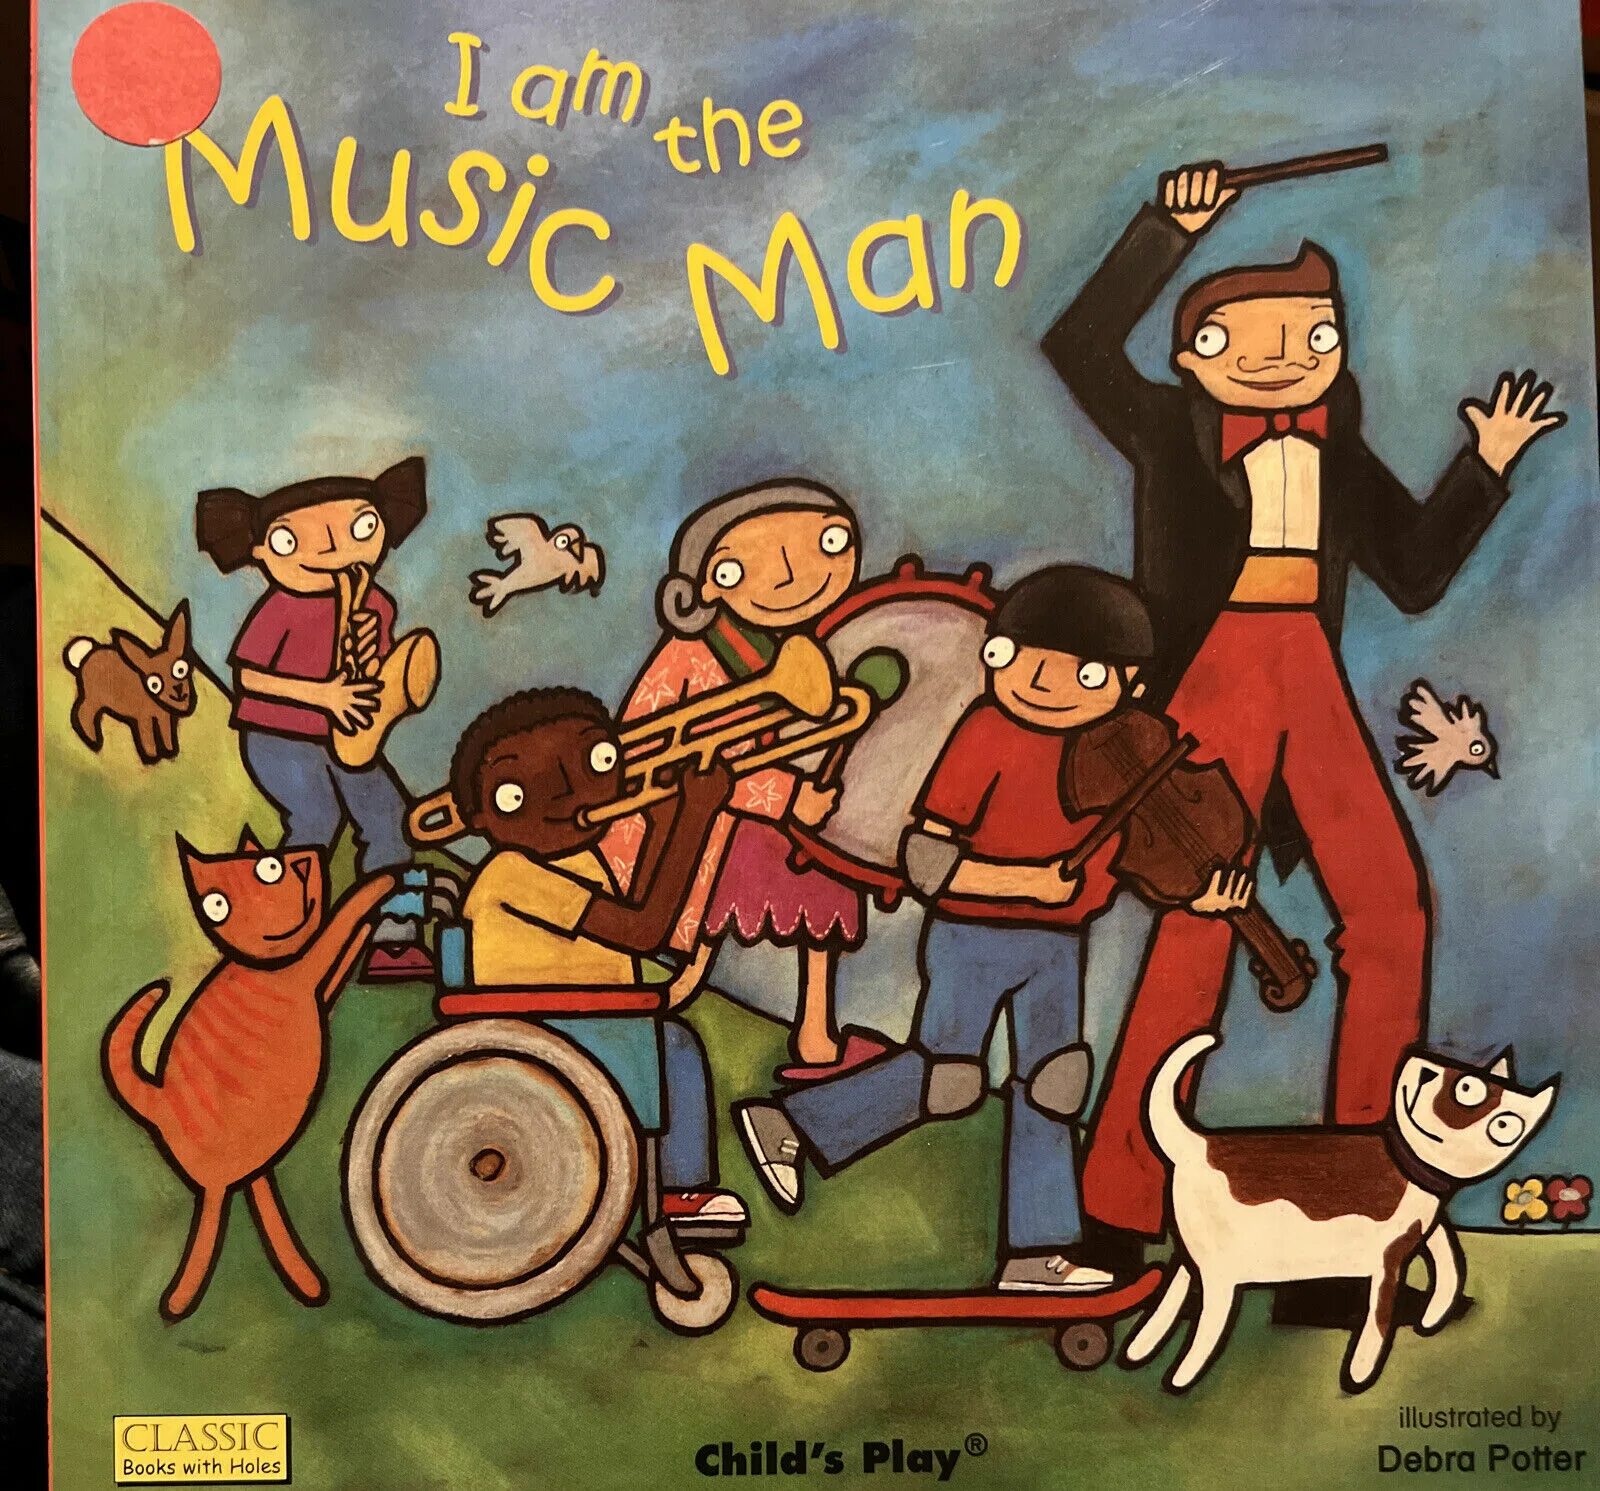 I am a Music man. "The Music man" (1962 год). Man Music песня детская.